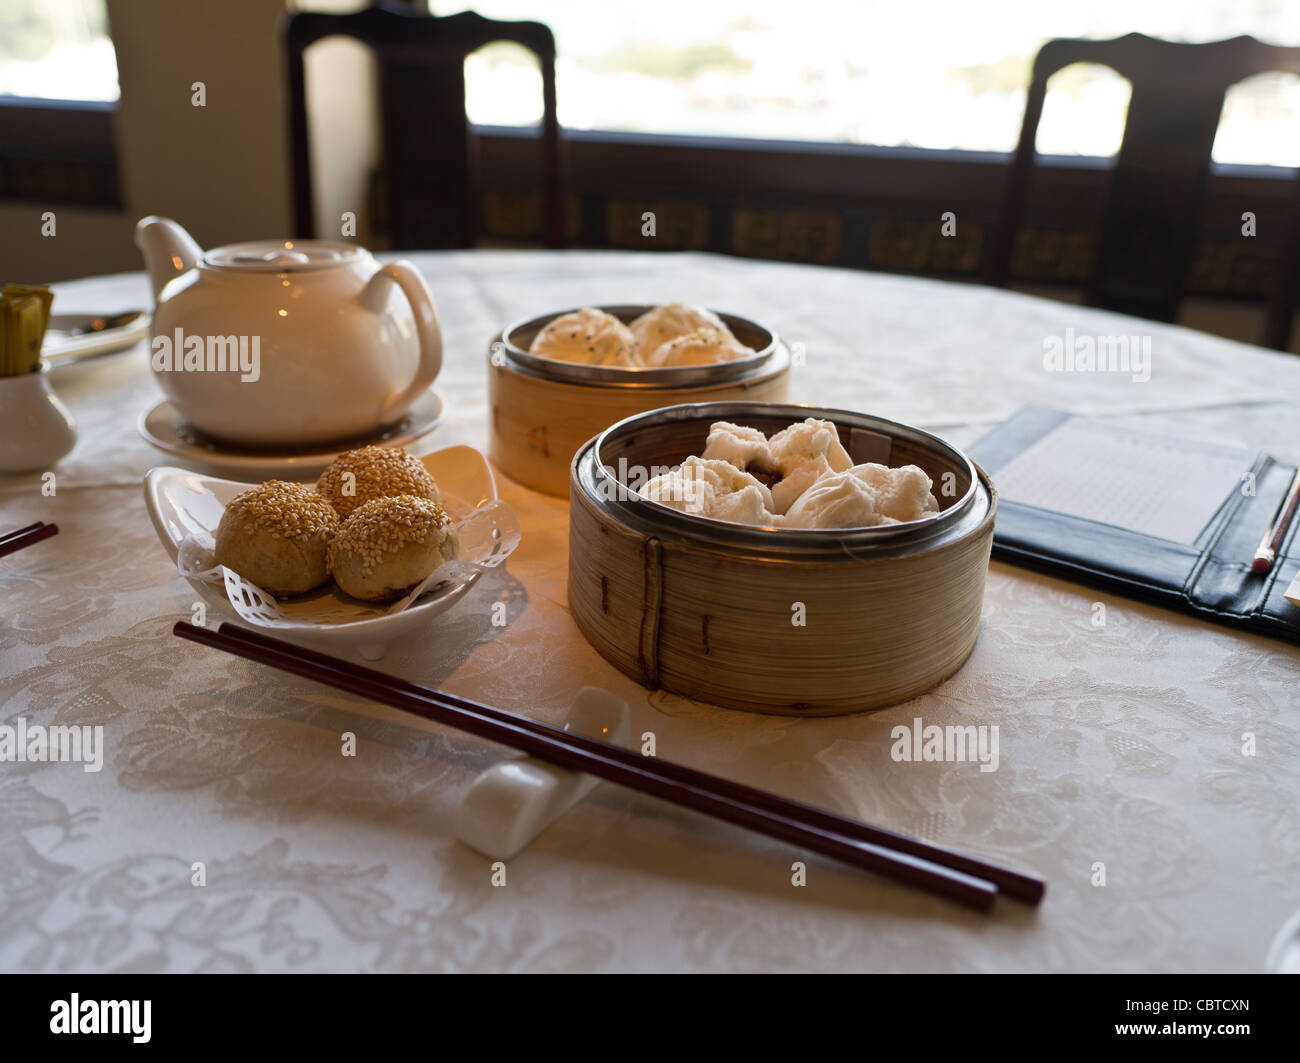 dh Jumbo ristorante galleggiante ABERDEEN HONG KONG Cantonese Dim Sum tavolo chopsticks tè cinese pasto cinese piatto cucina bambù cibo Foto Stock